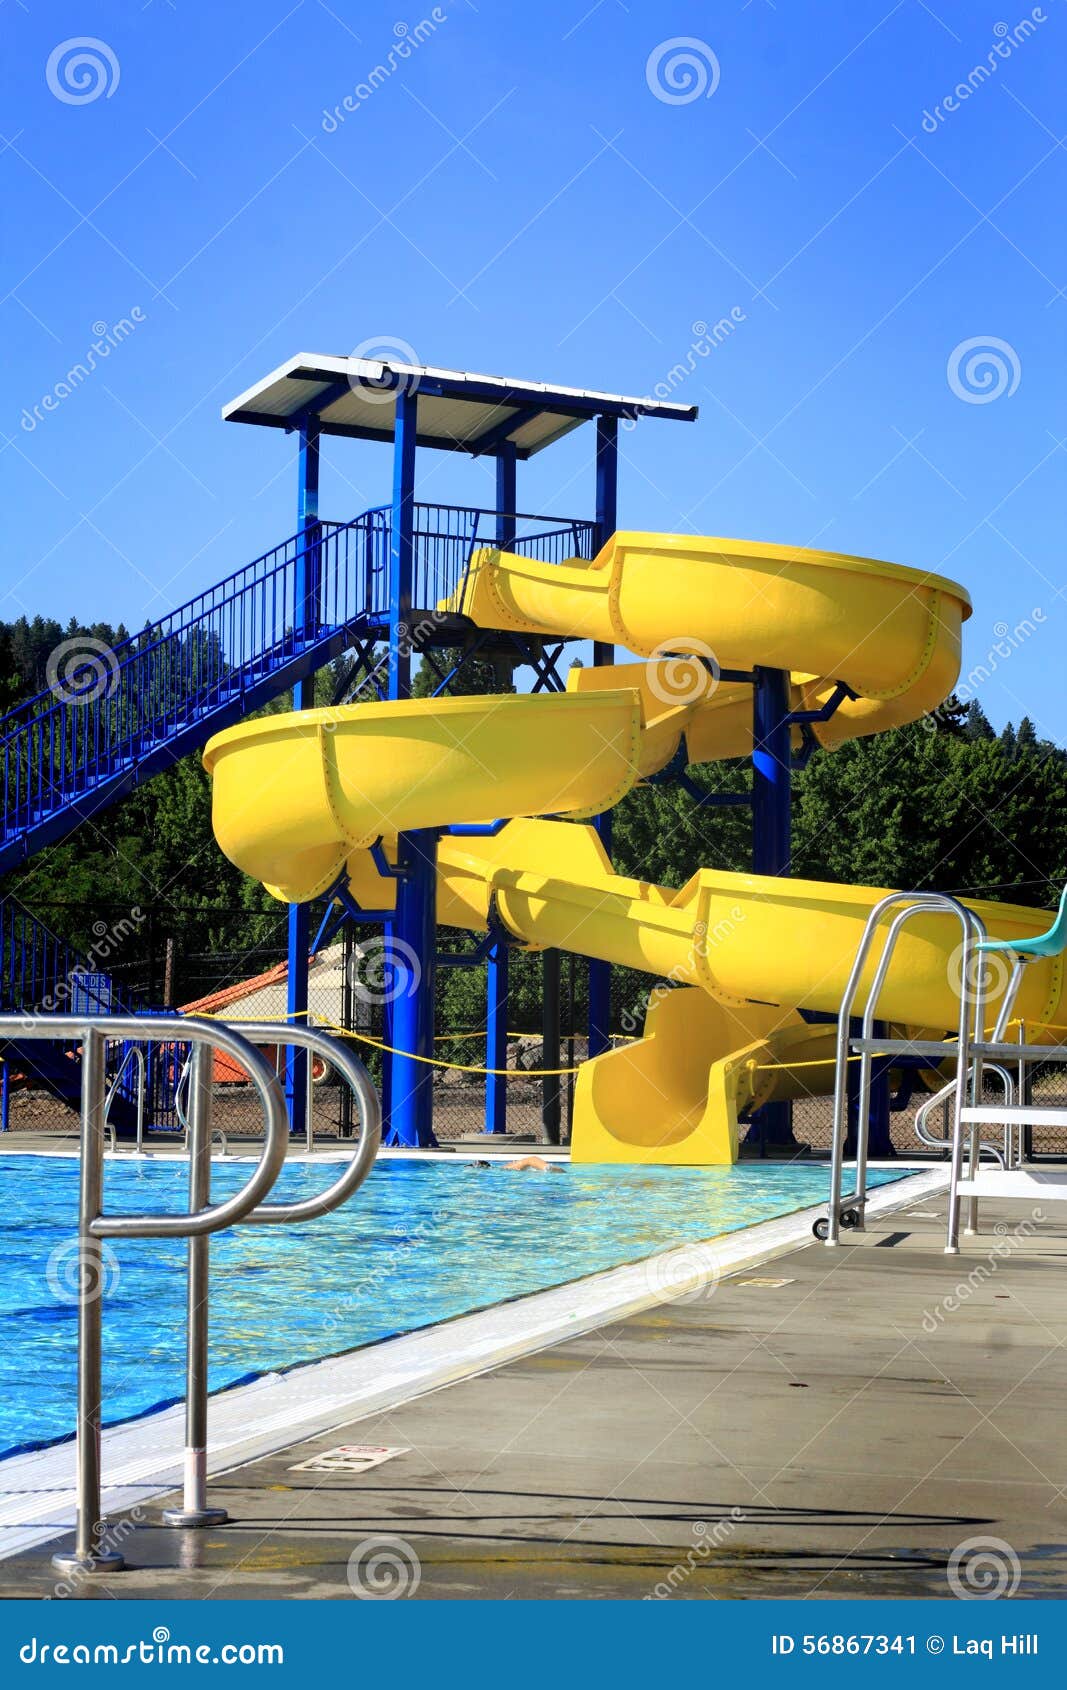 pool water slide